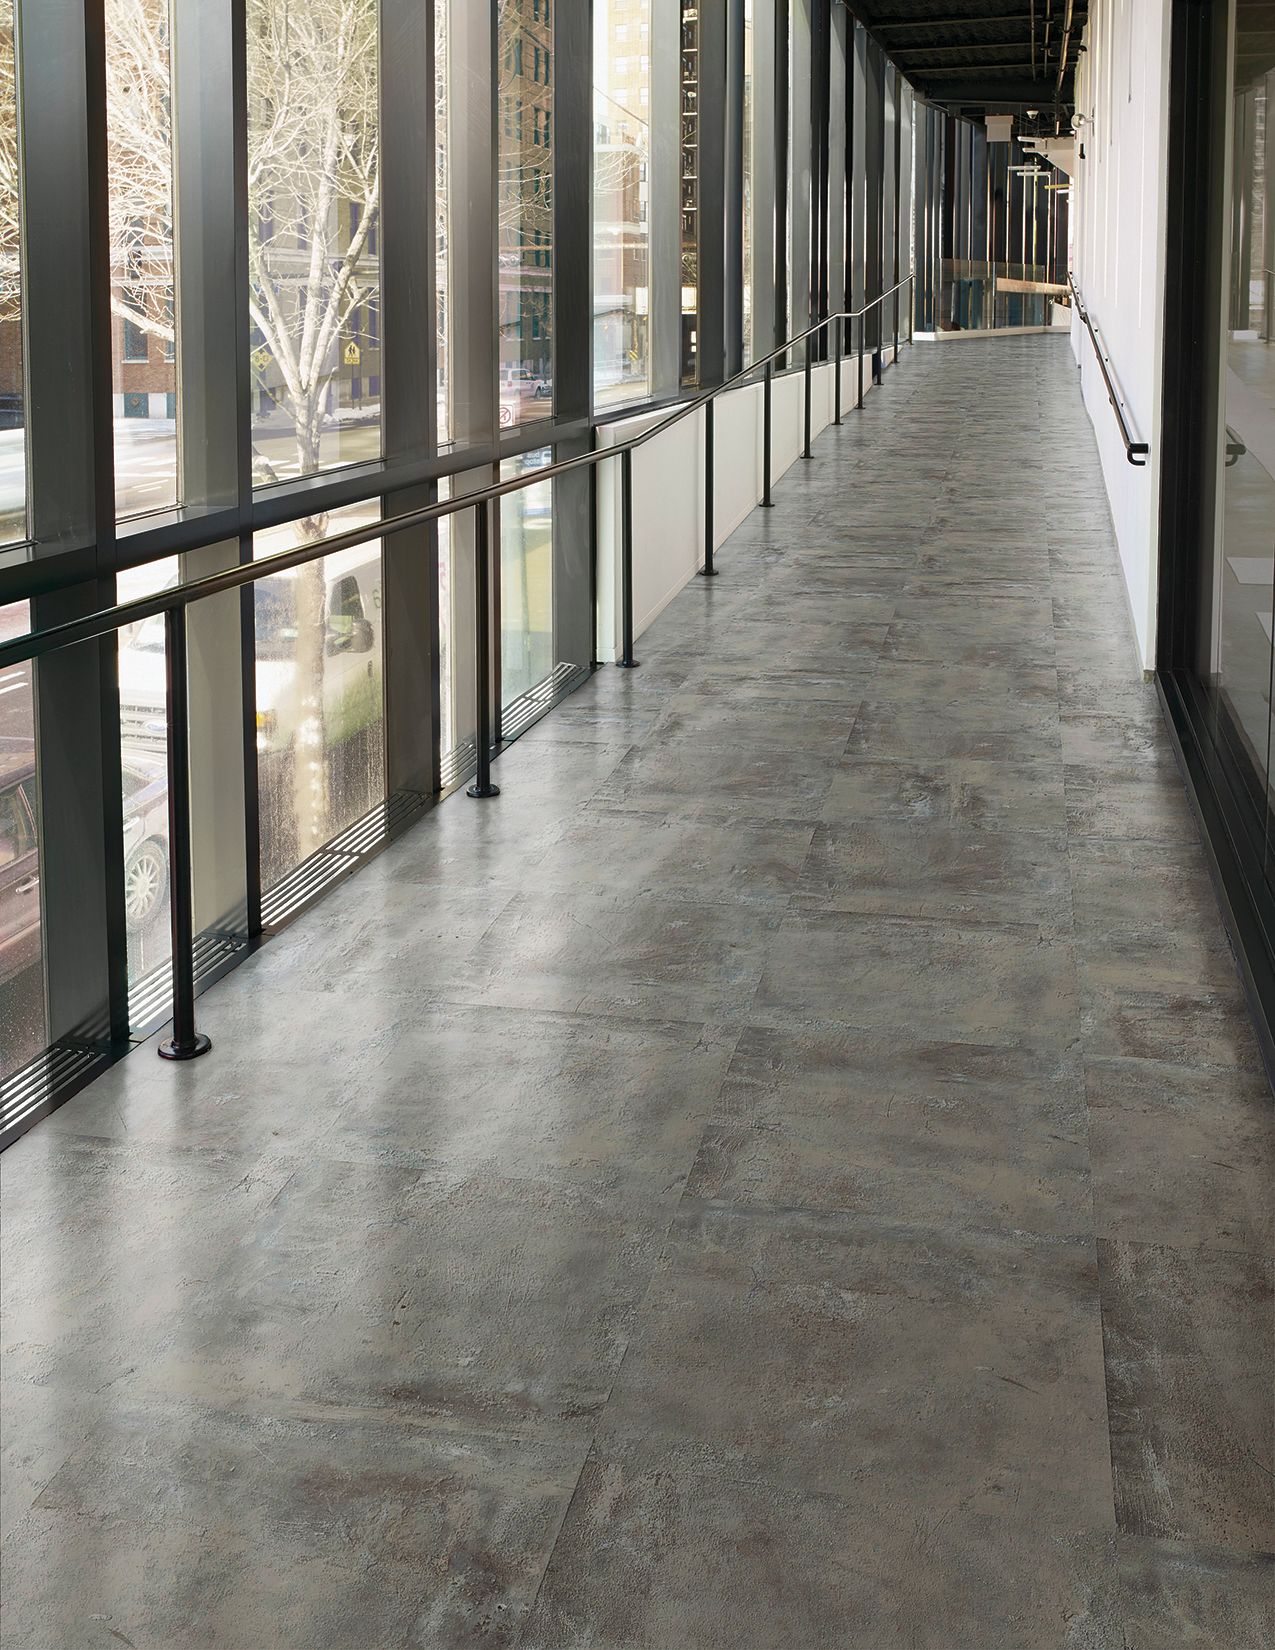 Interface Textured Stones LVT in corridor with railing número de imagen 9